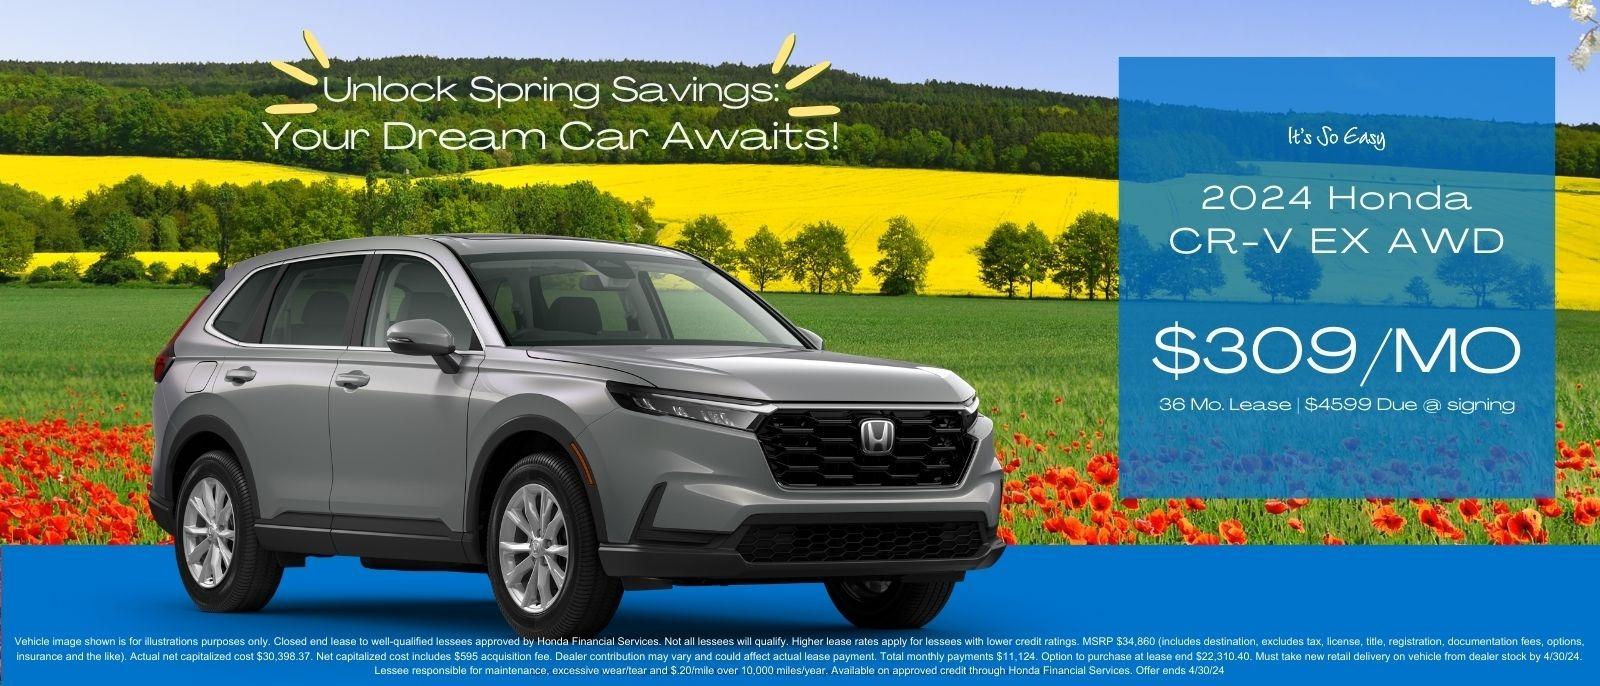 Unlock Spring Savings: Your Dream Car Awaits!

2024 Honda CR-V EX AWD
$309/MO 36 MO. Lease | $4599 Due at Signing